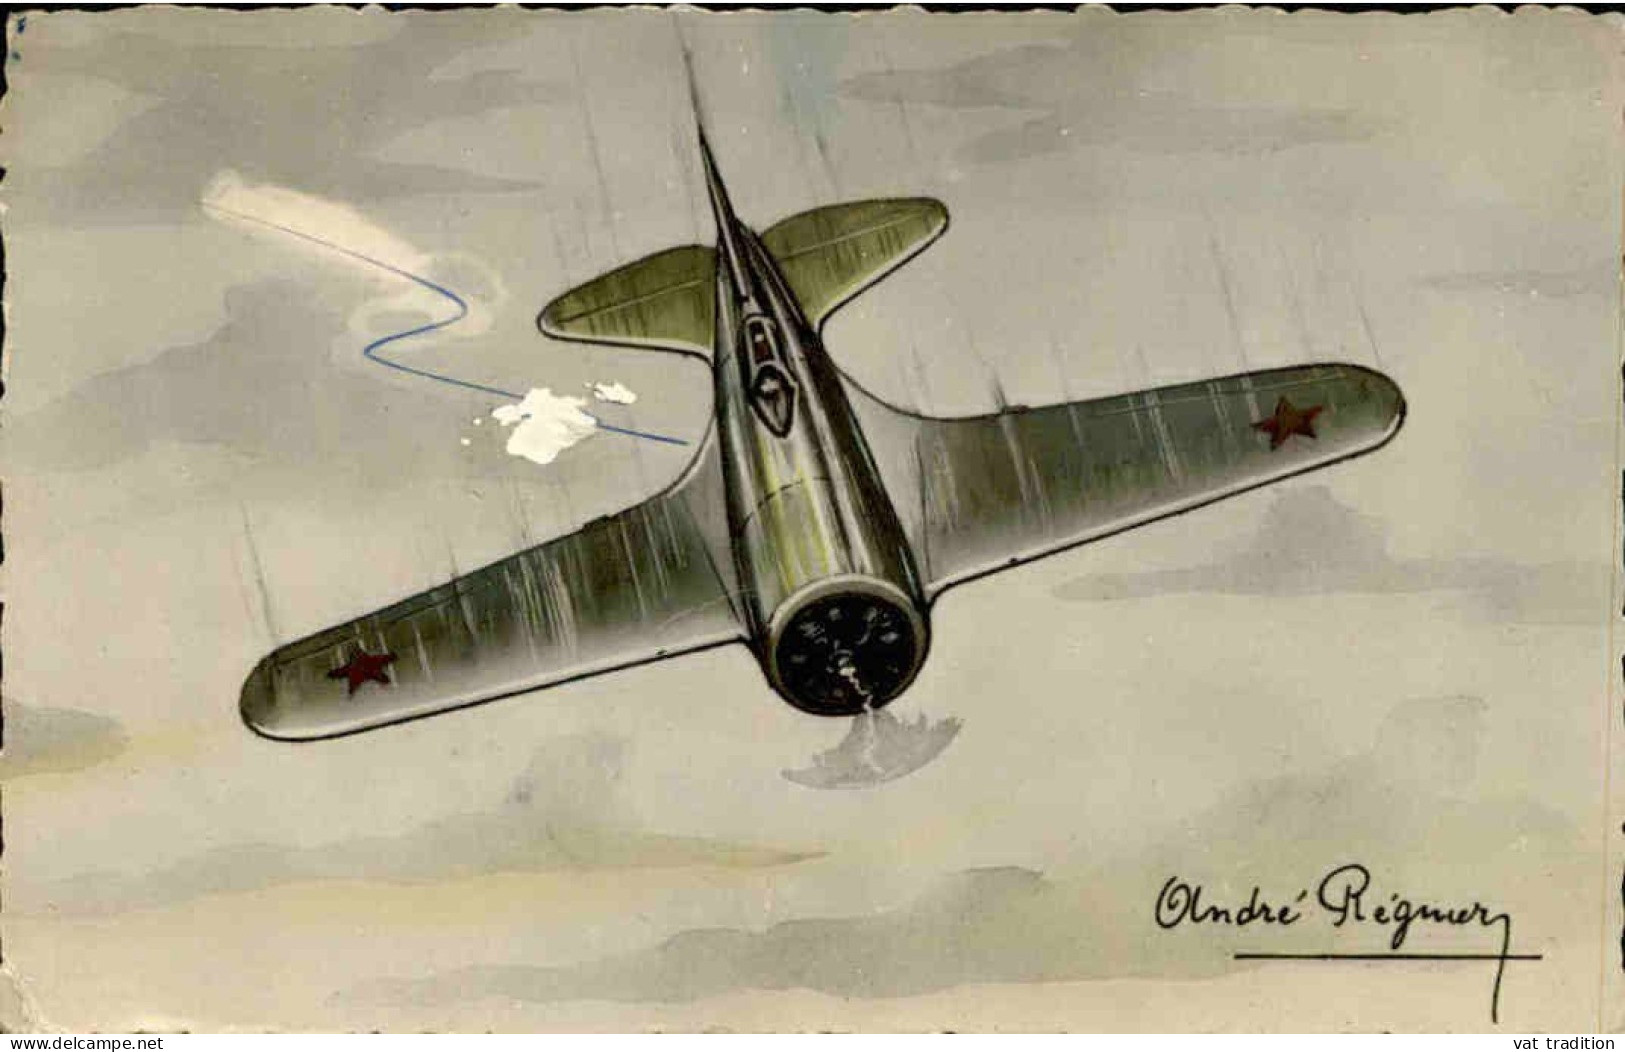 AVIATION - Carte Postale - Avion " Rata " - Monoplace De Chasse - L 152204 - 1939-1945: 2. Weltkrieg